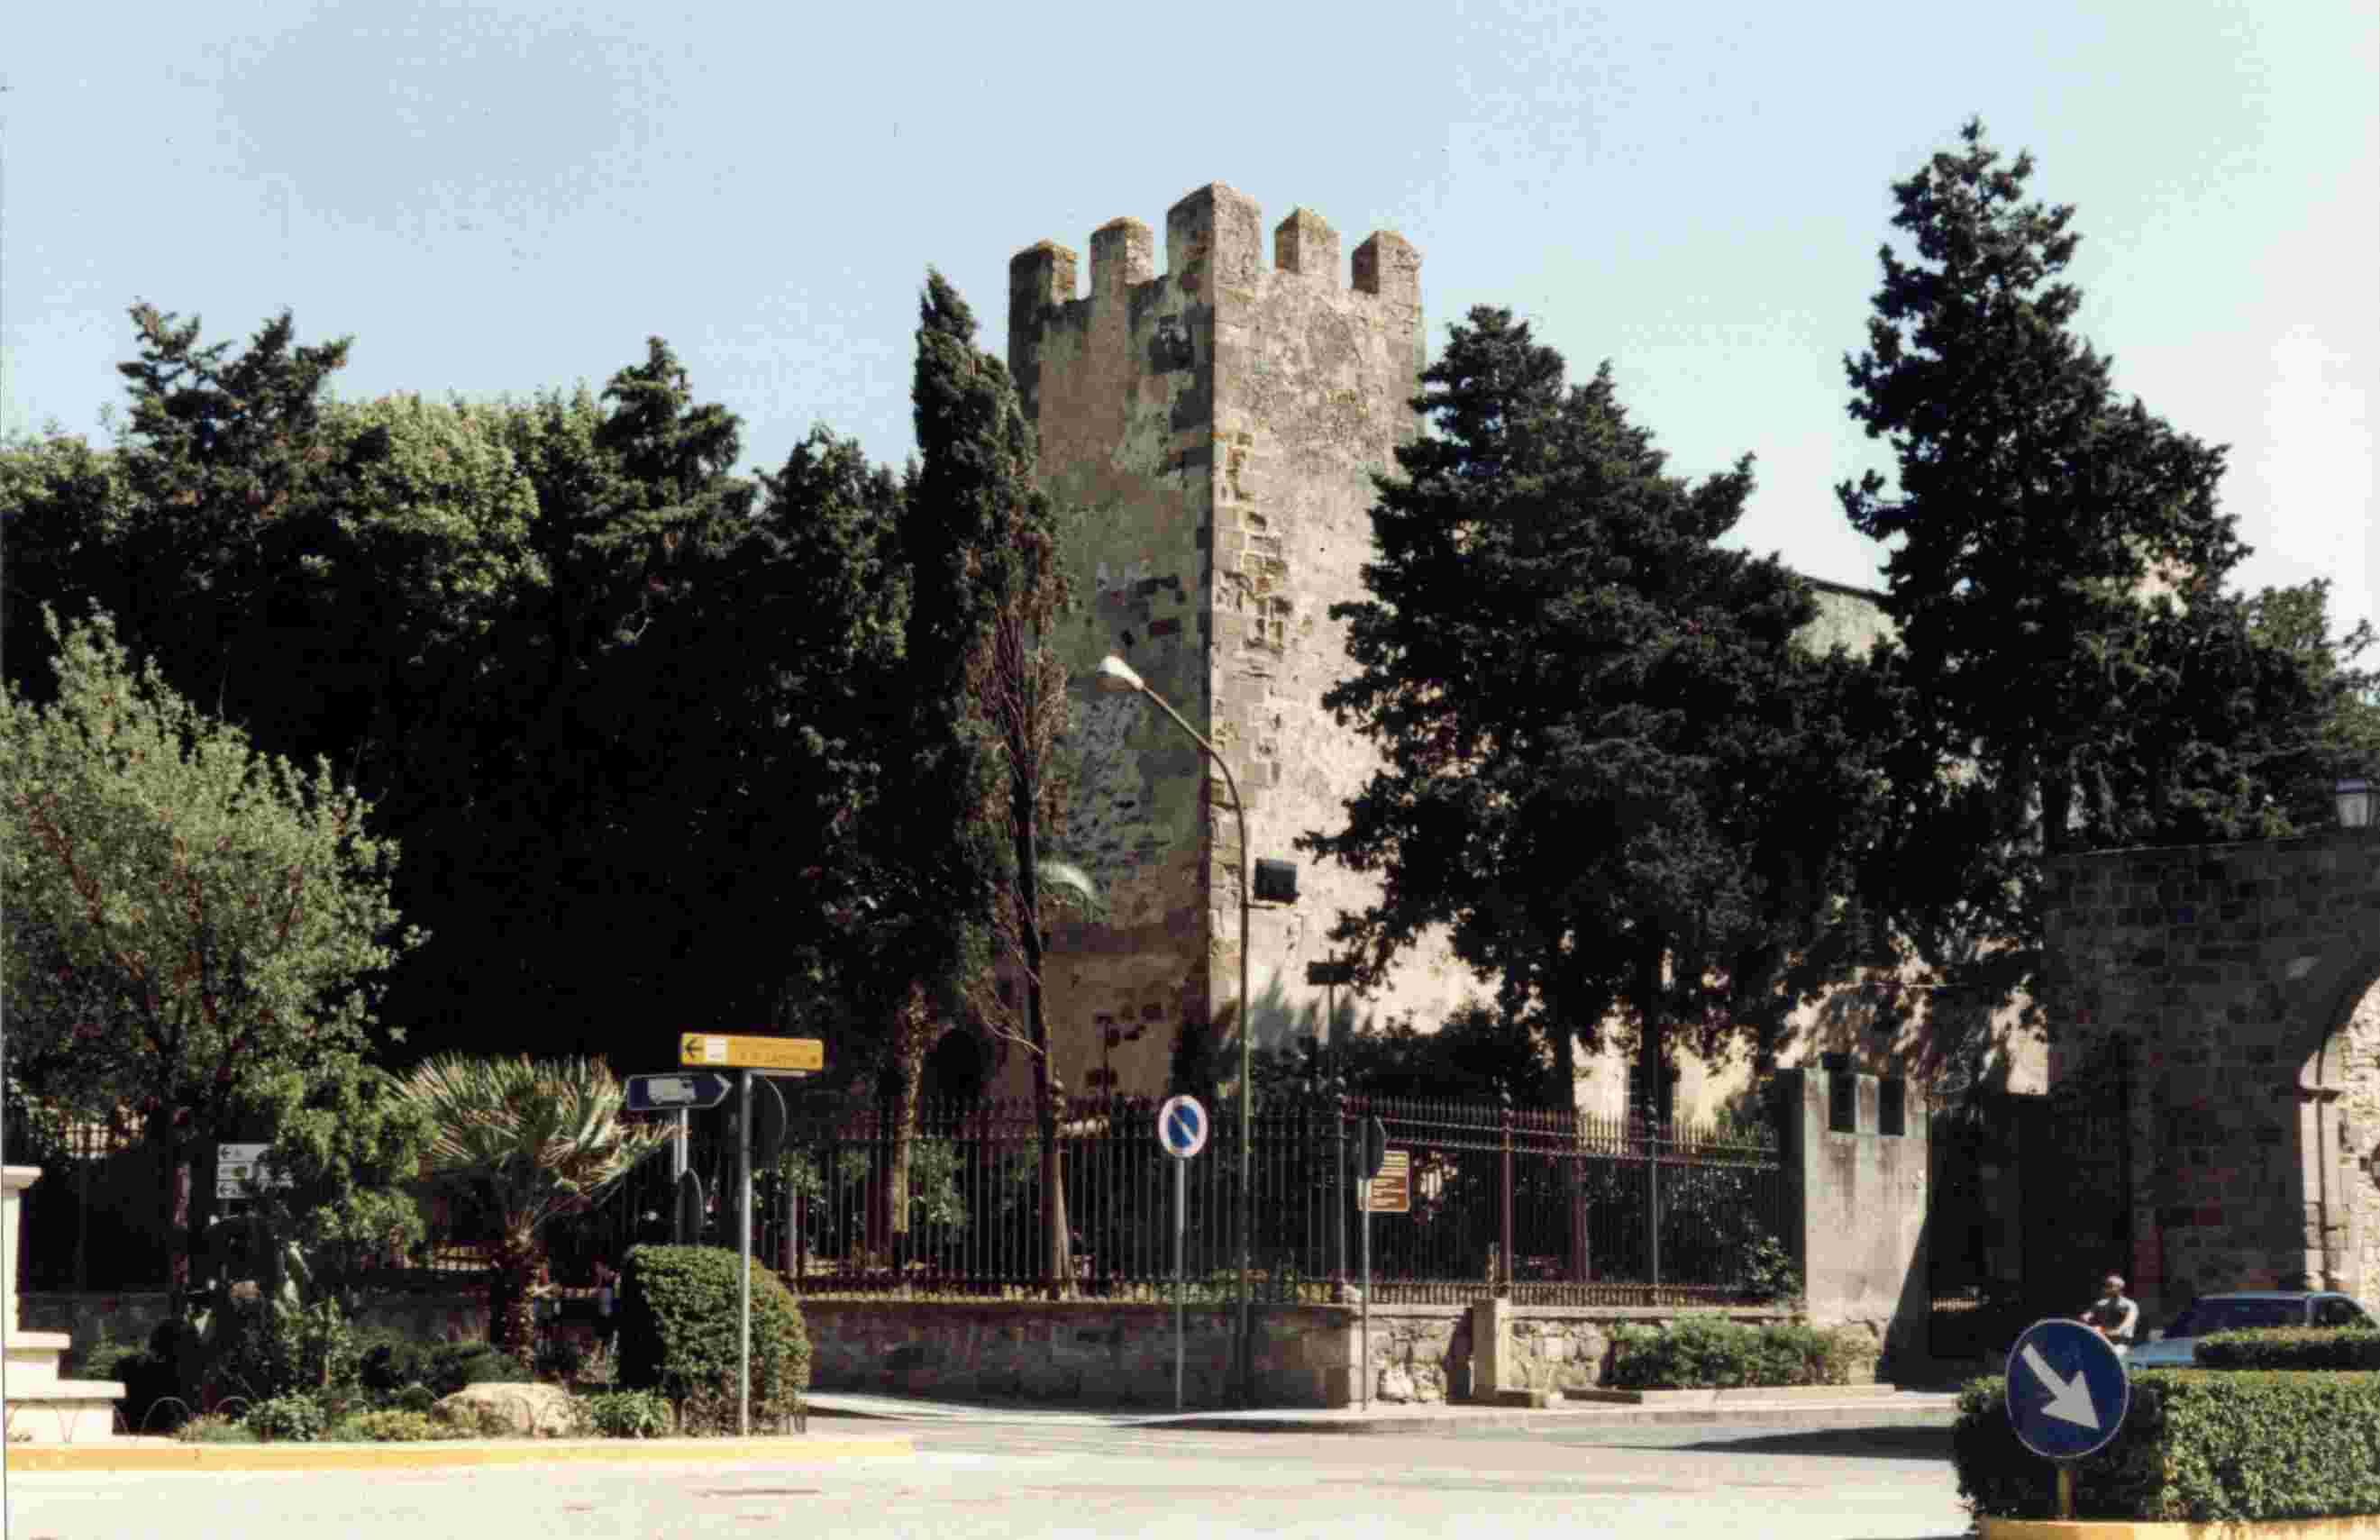 Il castello medioevale di Sanluri ottiene il certificato di eccellenza rilasciato da Tripadvisor